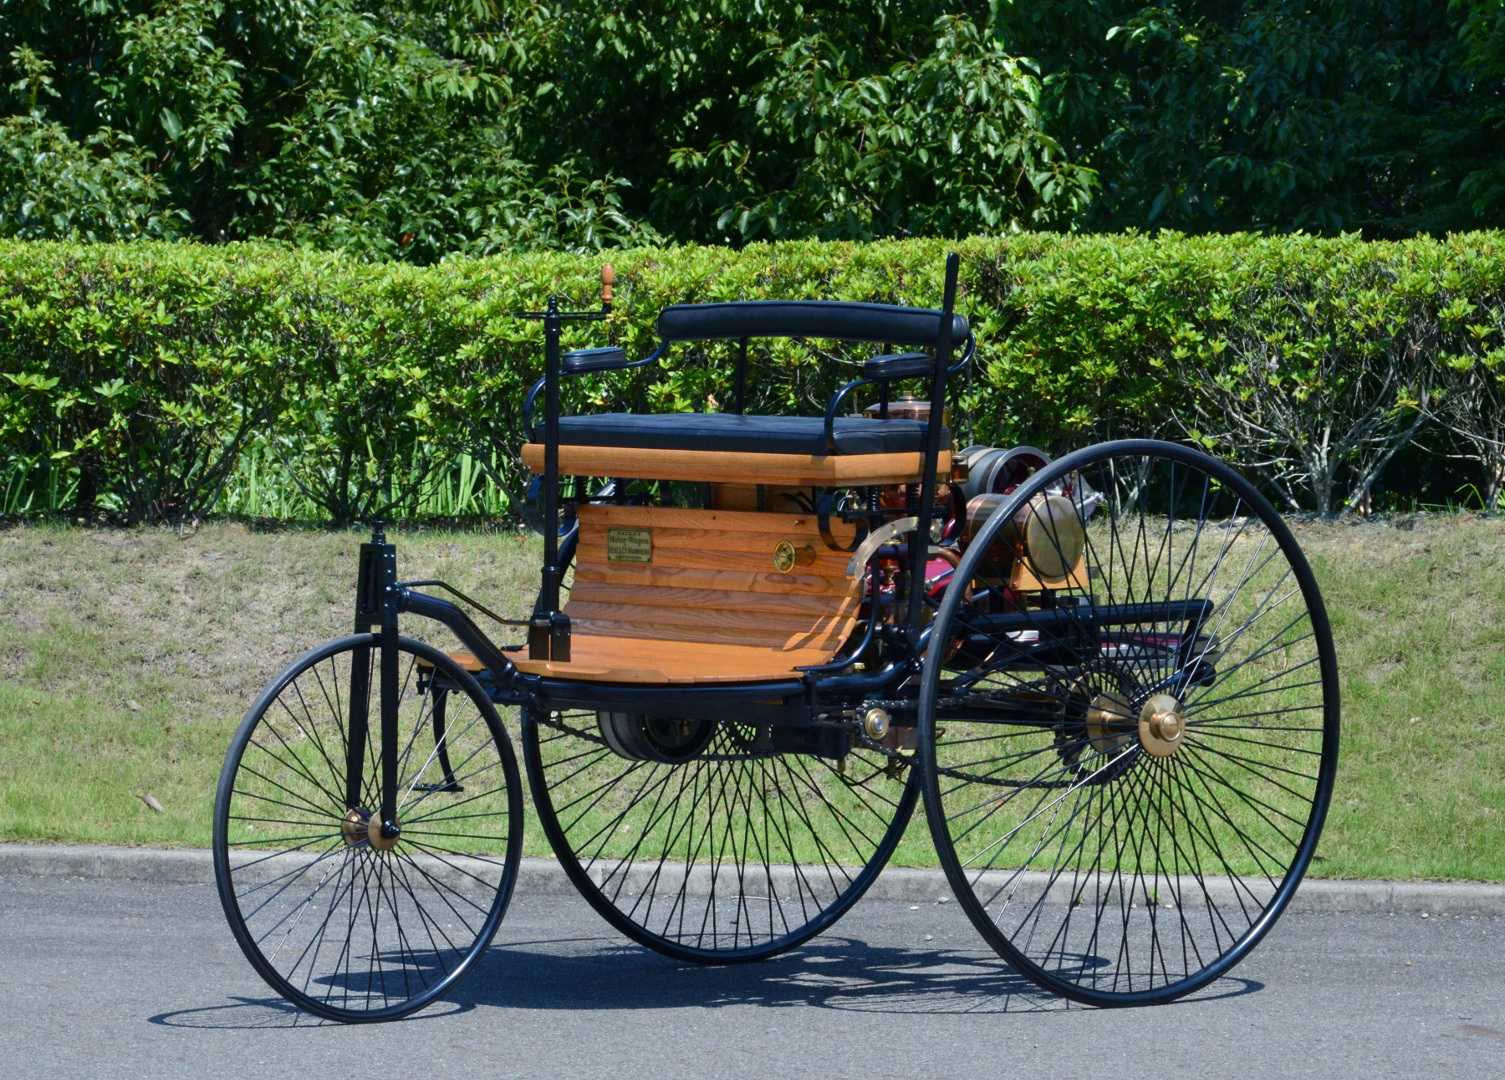 Benz Patent-Motorwagen (1886)